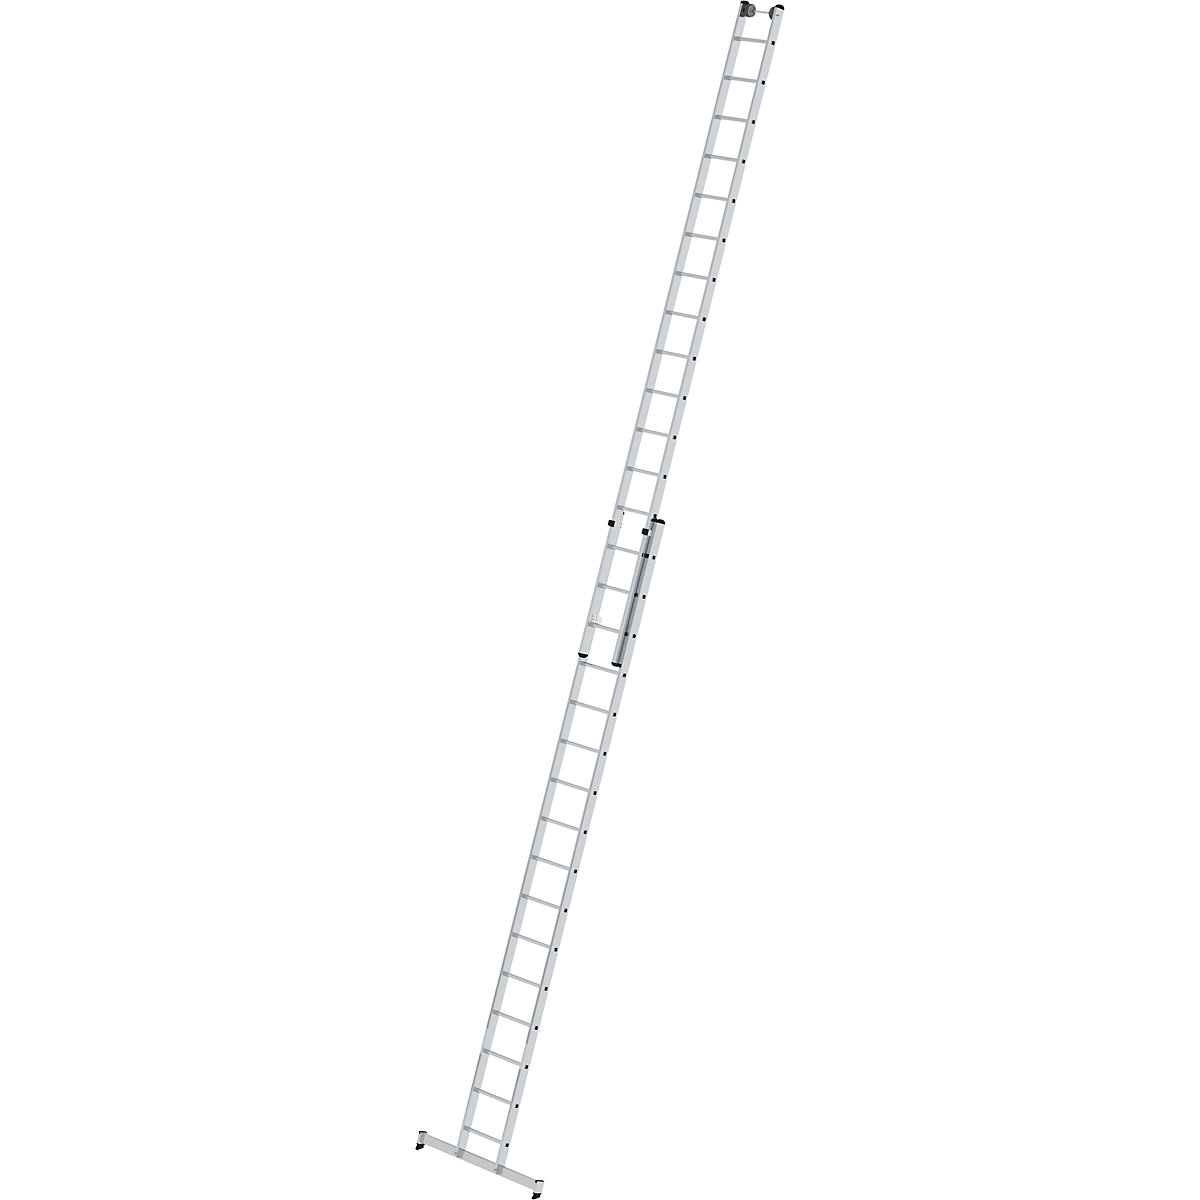 Escada de encosto ajustável em altura – MUNK, escada de regulação por deslize, 2 peças, 2 x 16 degraus, com travessa nivello®-8